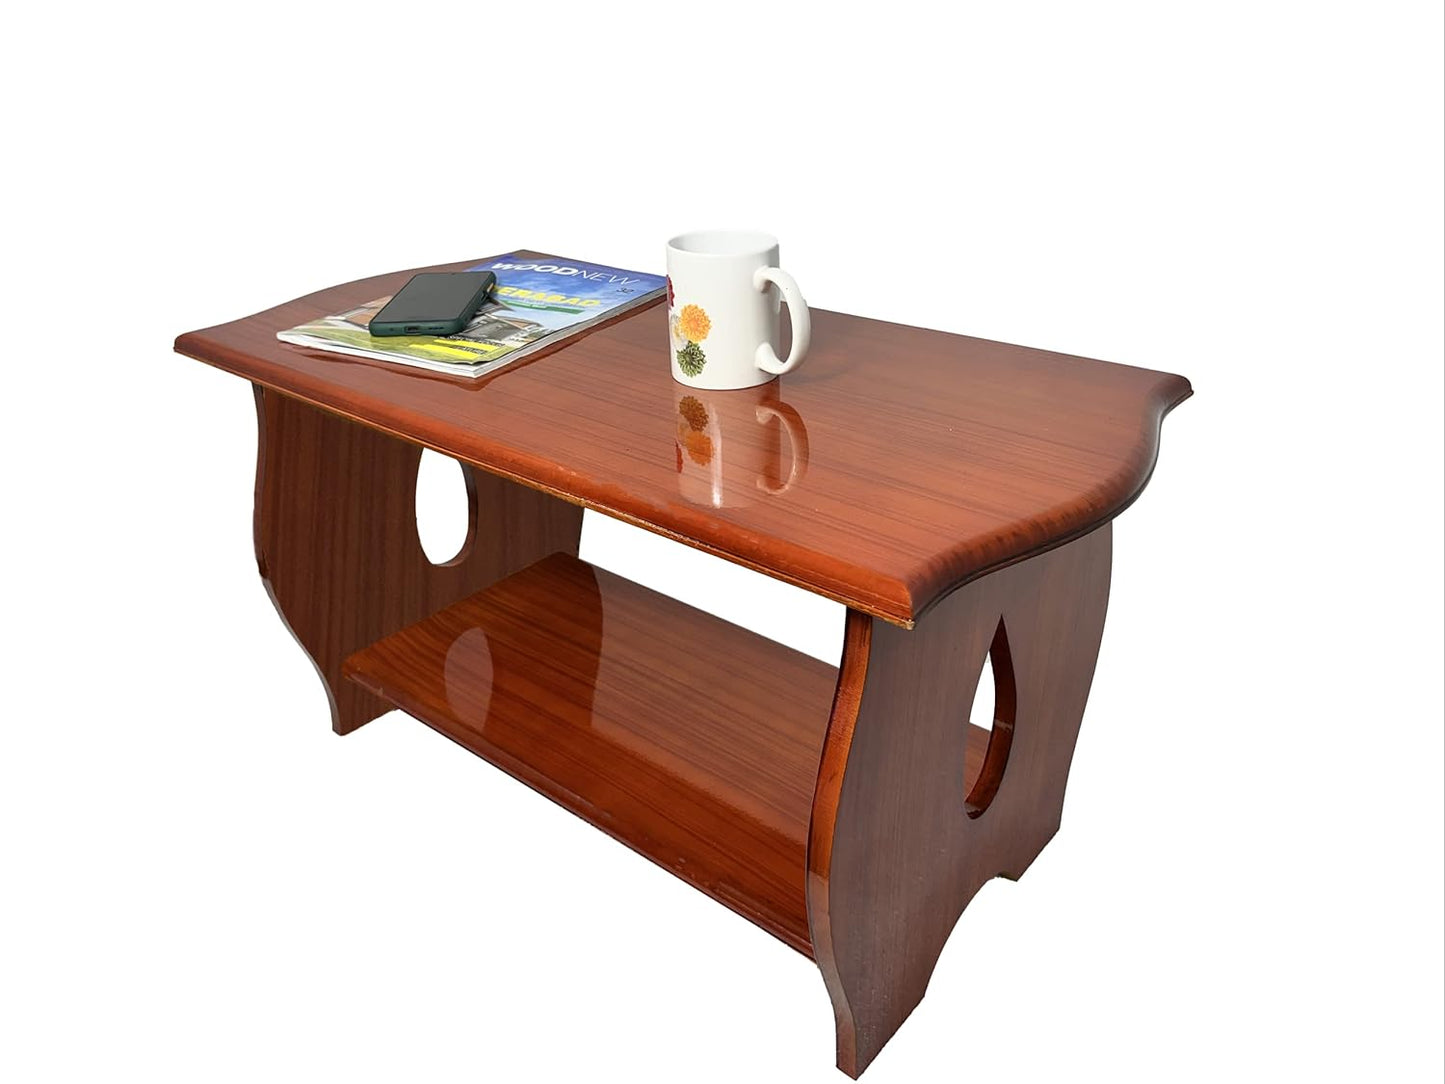 Pedpix® Engineered Wood Coffee Table (Teak Finish) Wooden Tea Table| Teapot |DIY Wooden Table Engineered Wood Coffee Table